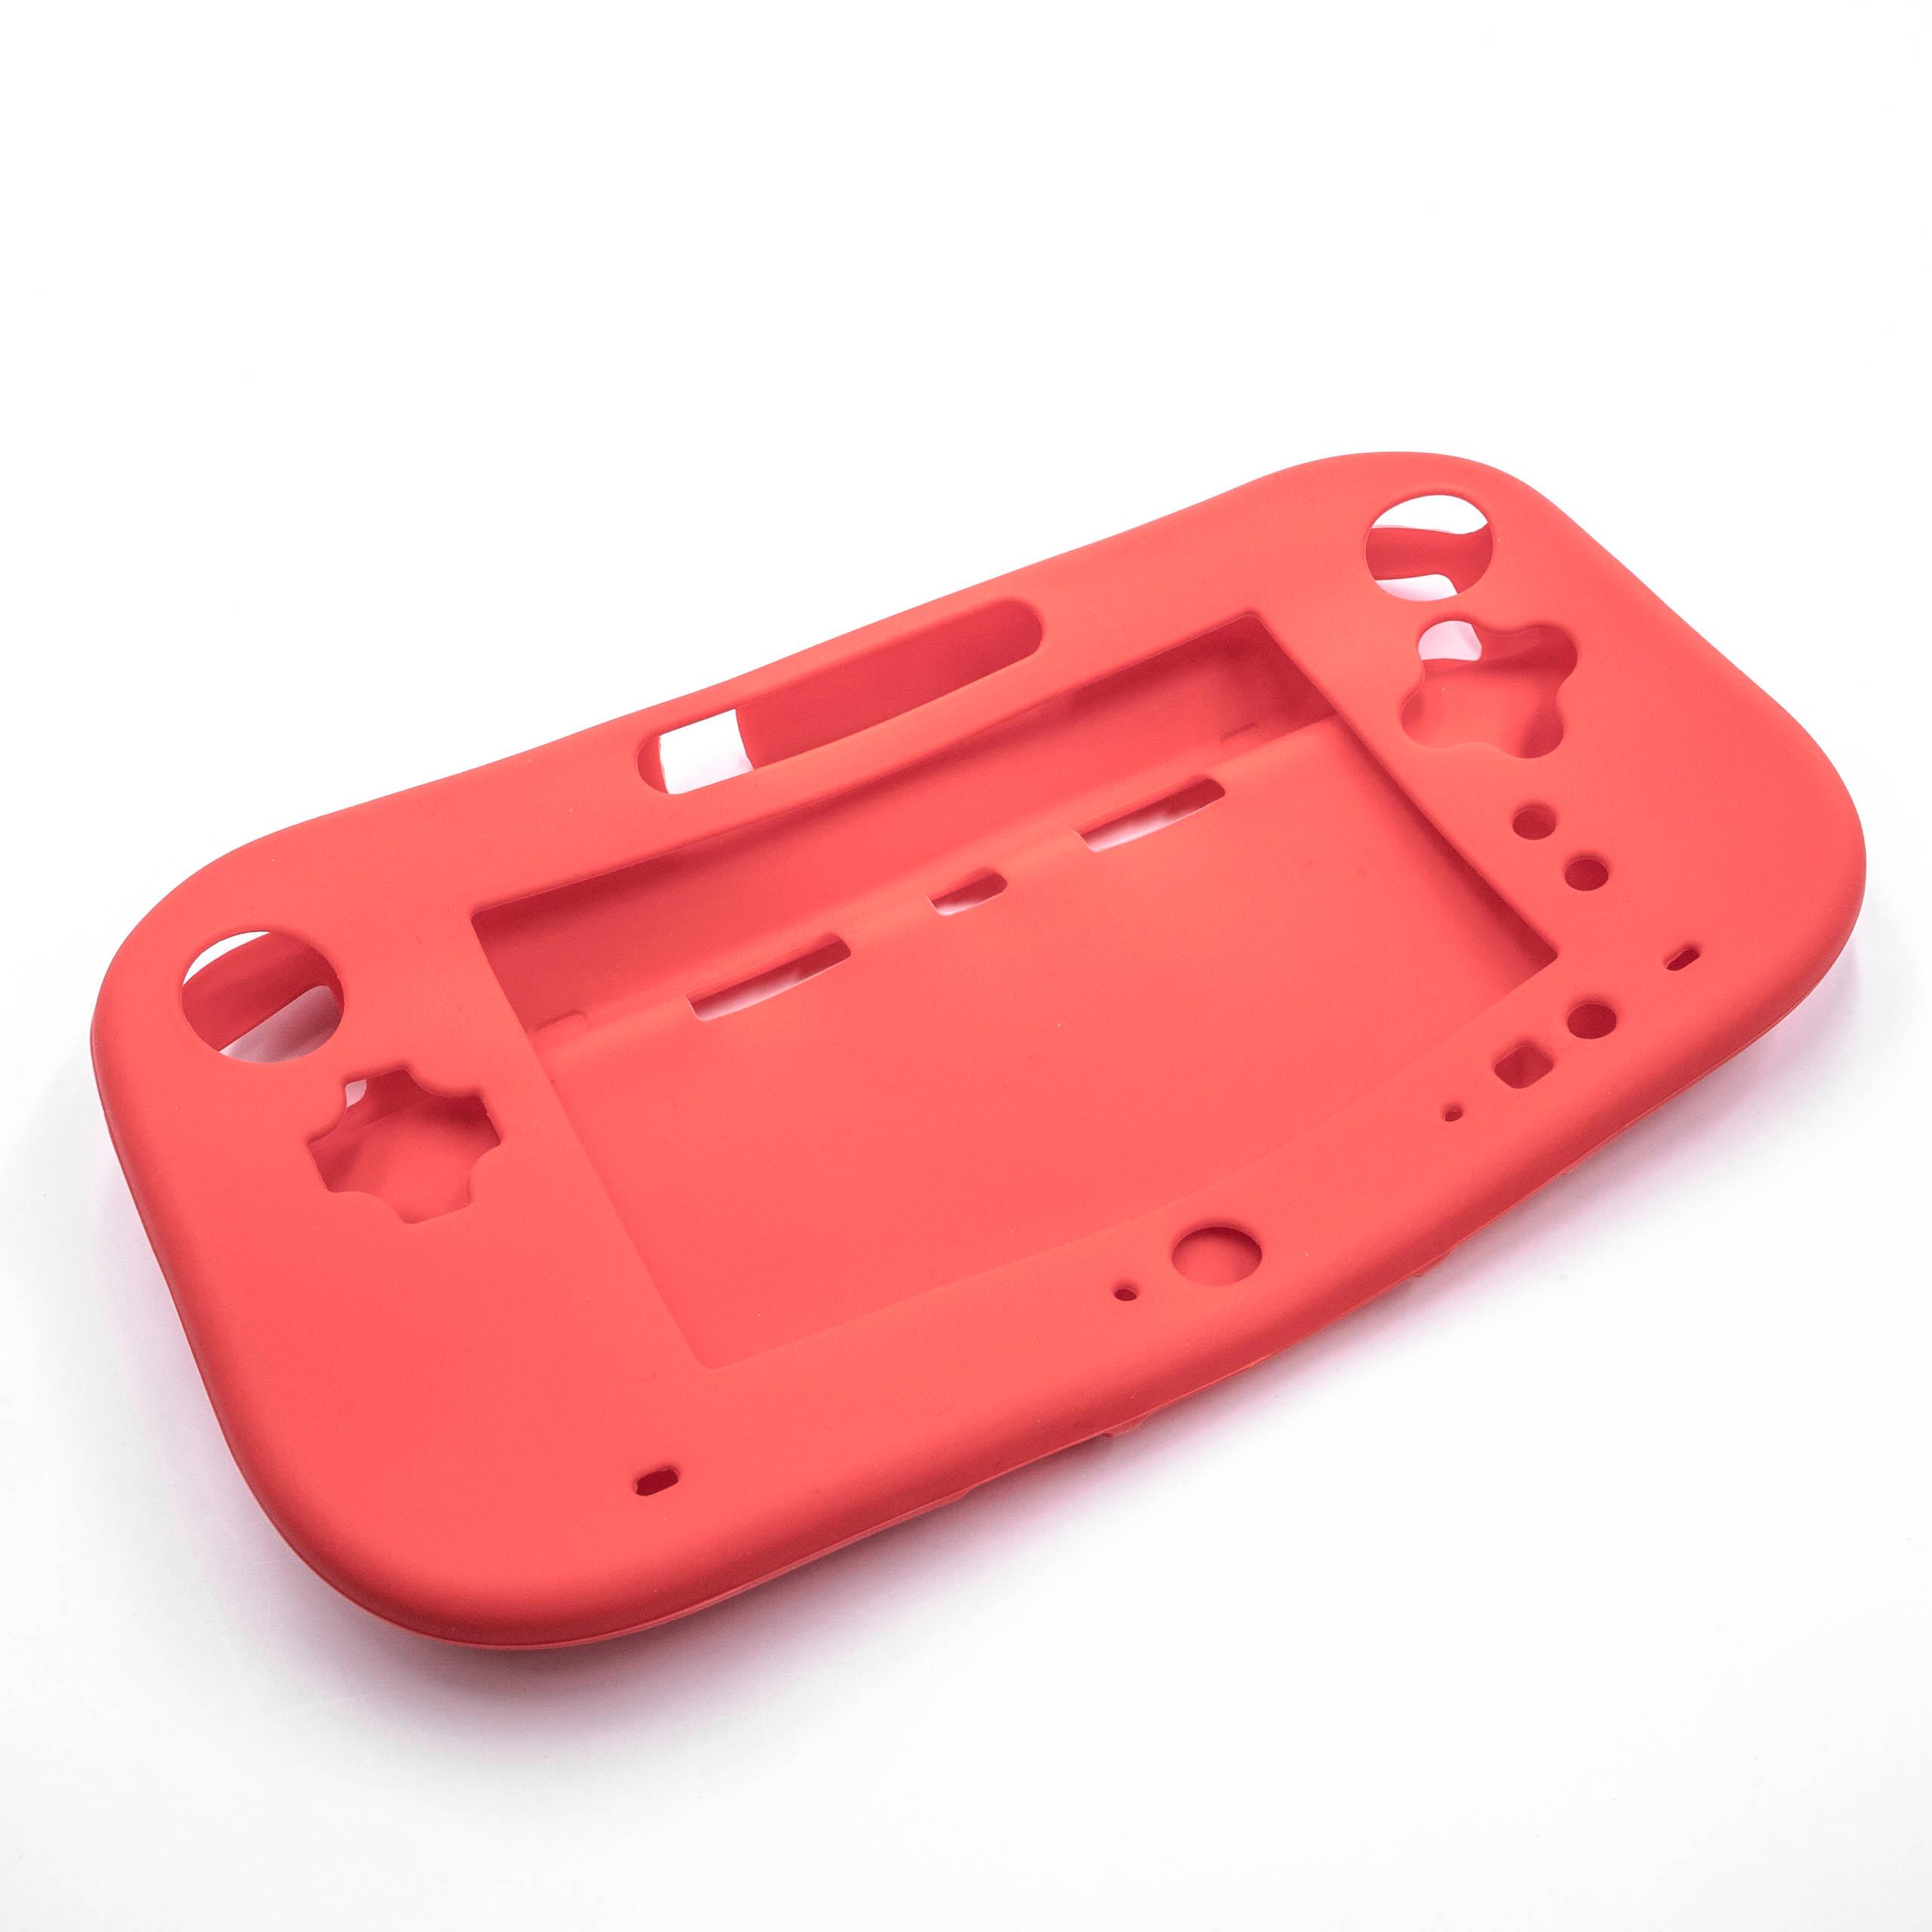 Hülle passend für Nintendo Wii U Gamepad Spielekonsole - Case Silikon Rot